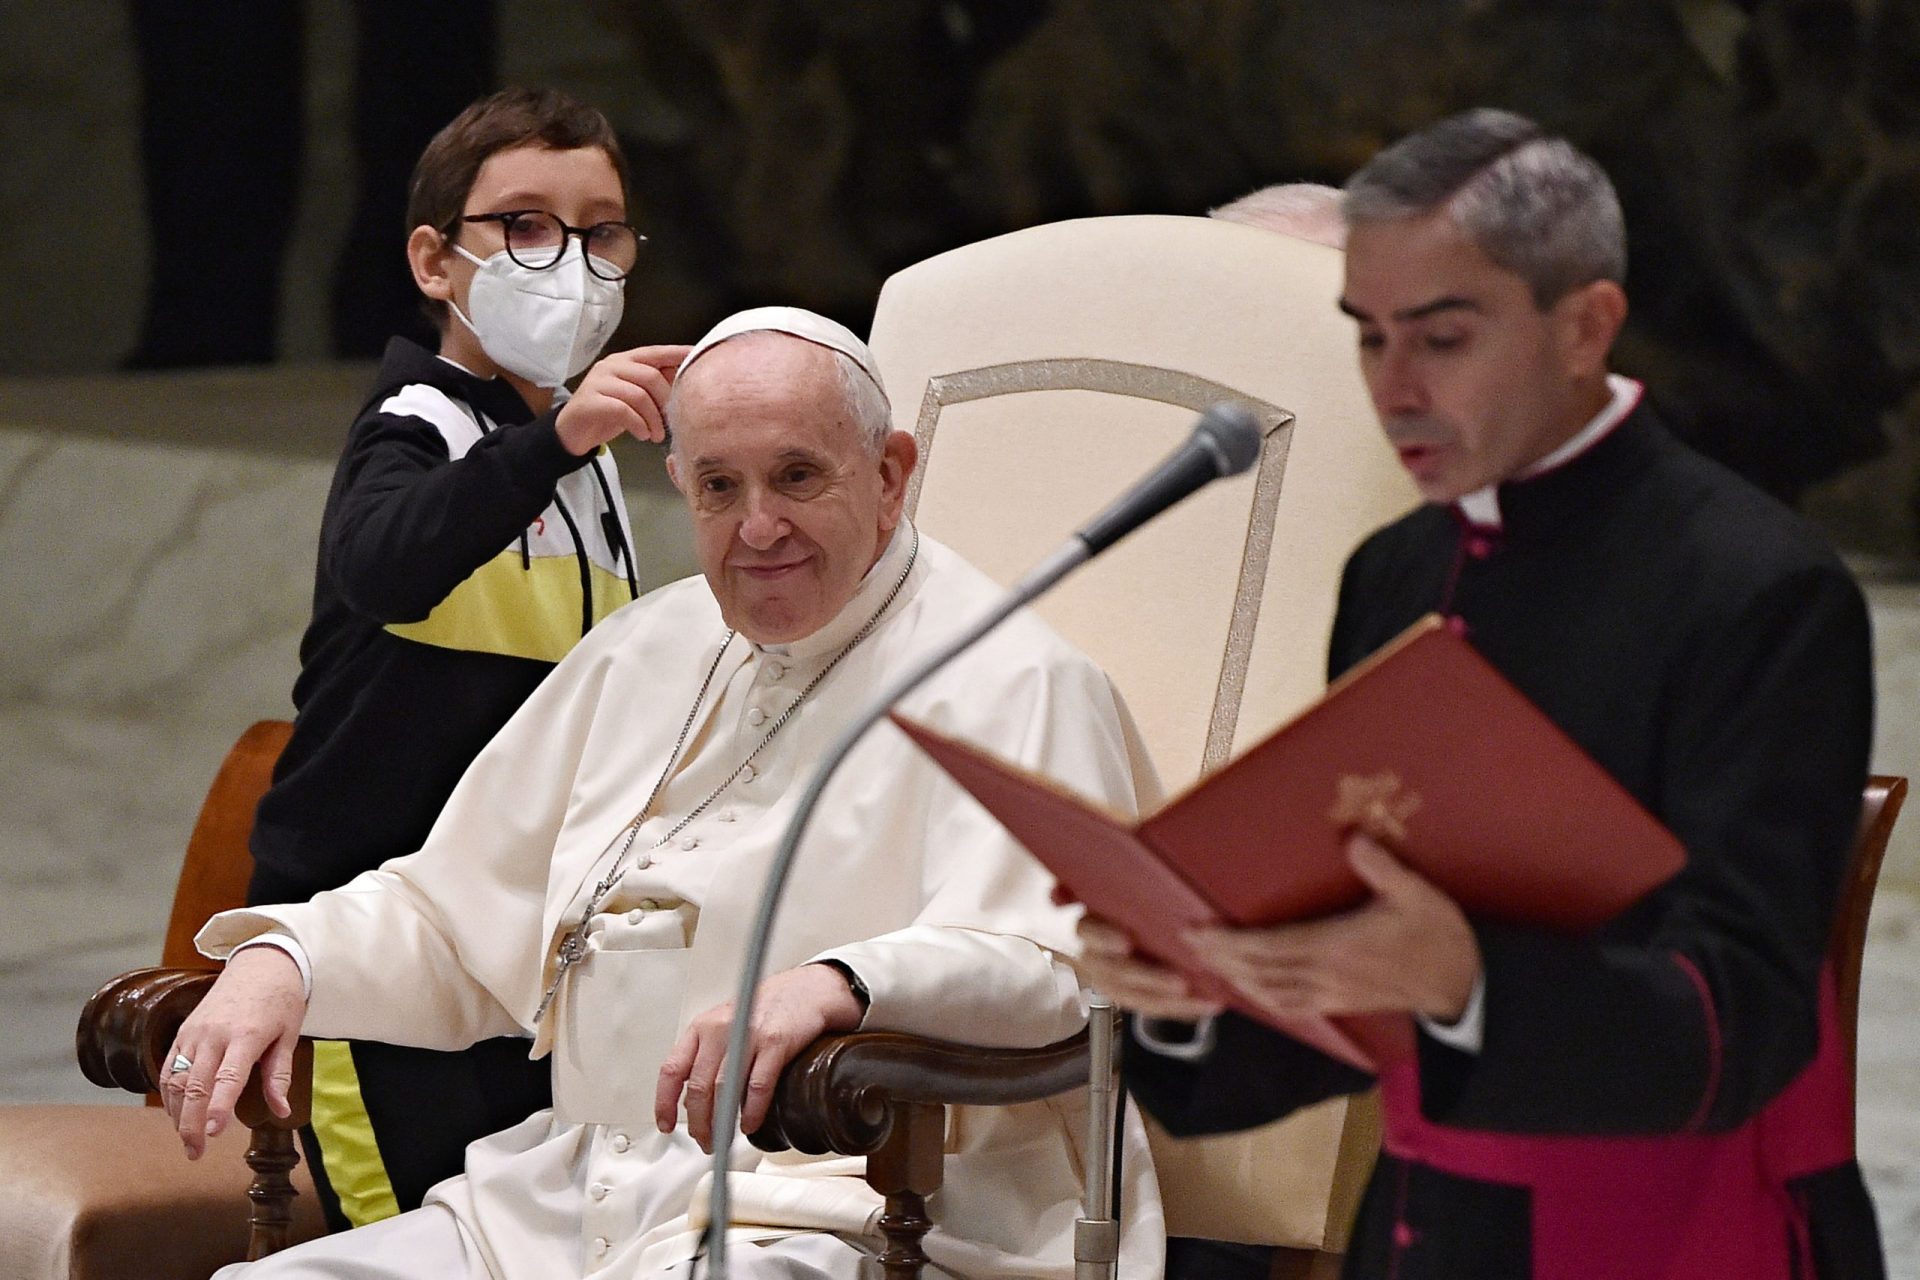 Menino dirigiu-se ao Papa e fez de tudo para ter solidéu&#8230; após muita insistência conseguiu | Vídeo